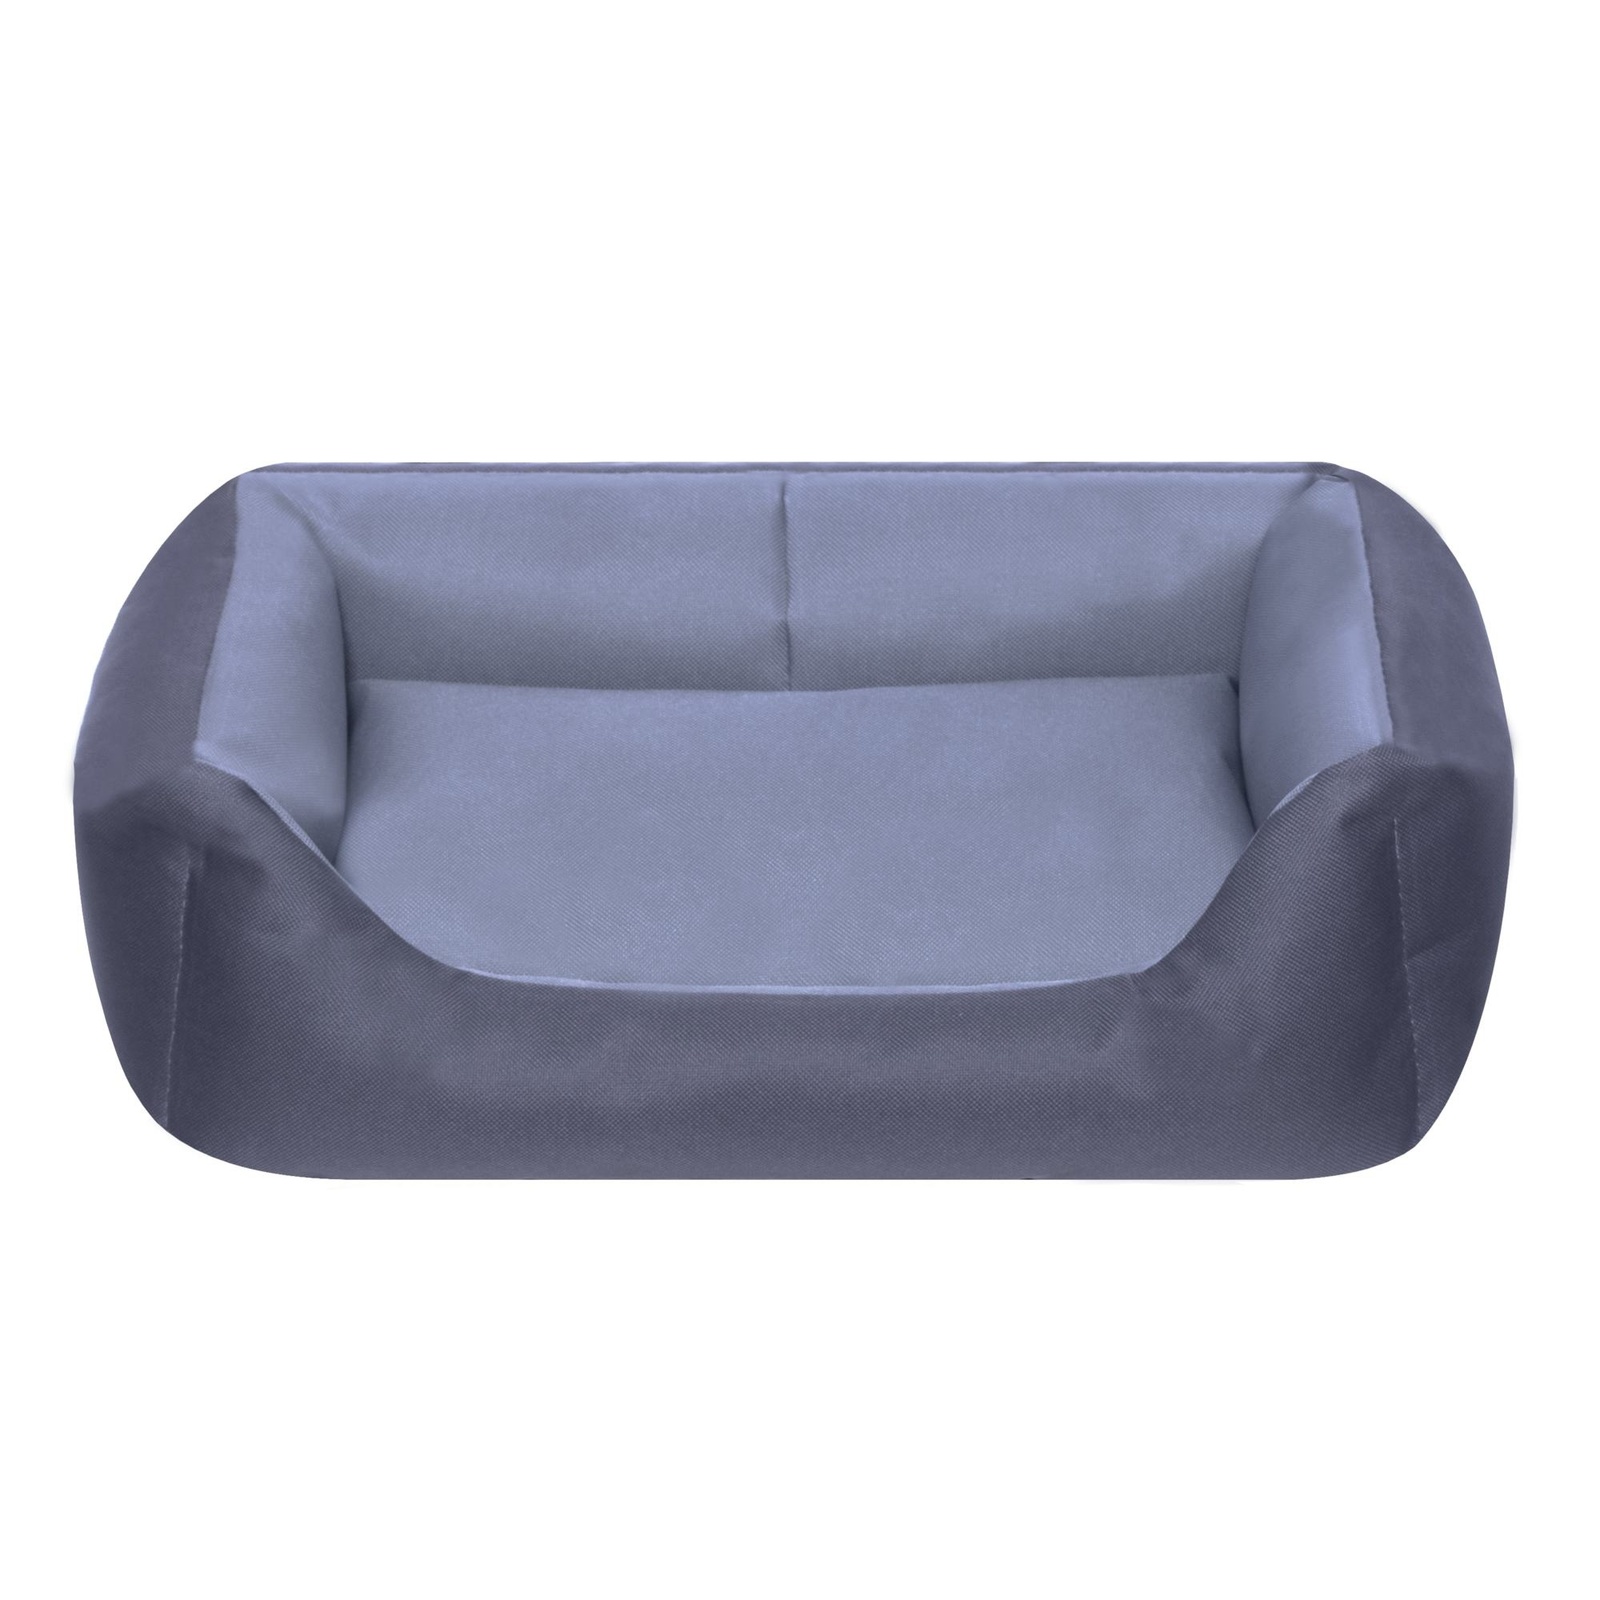 Yami-Yami когтеточки и лежаки лежак прямоугольный с подушкой, серый (1,58 кг) Yami-Yami когтеточки и лежаки лежак прямоугольный с подушкой, серый (1,58 кг) - фото 1